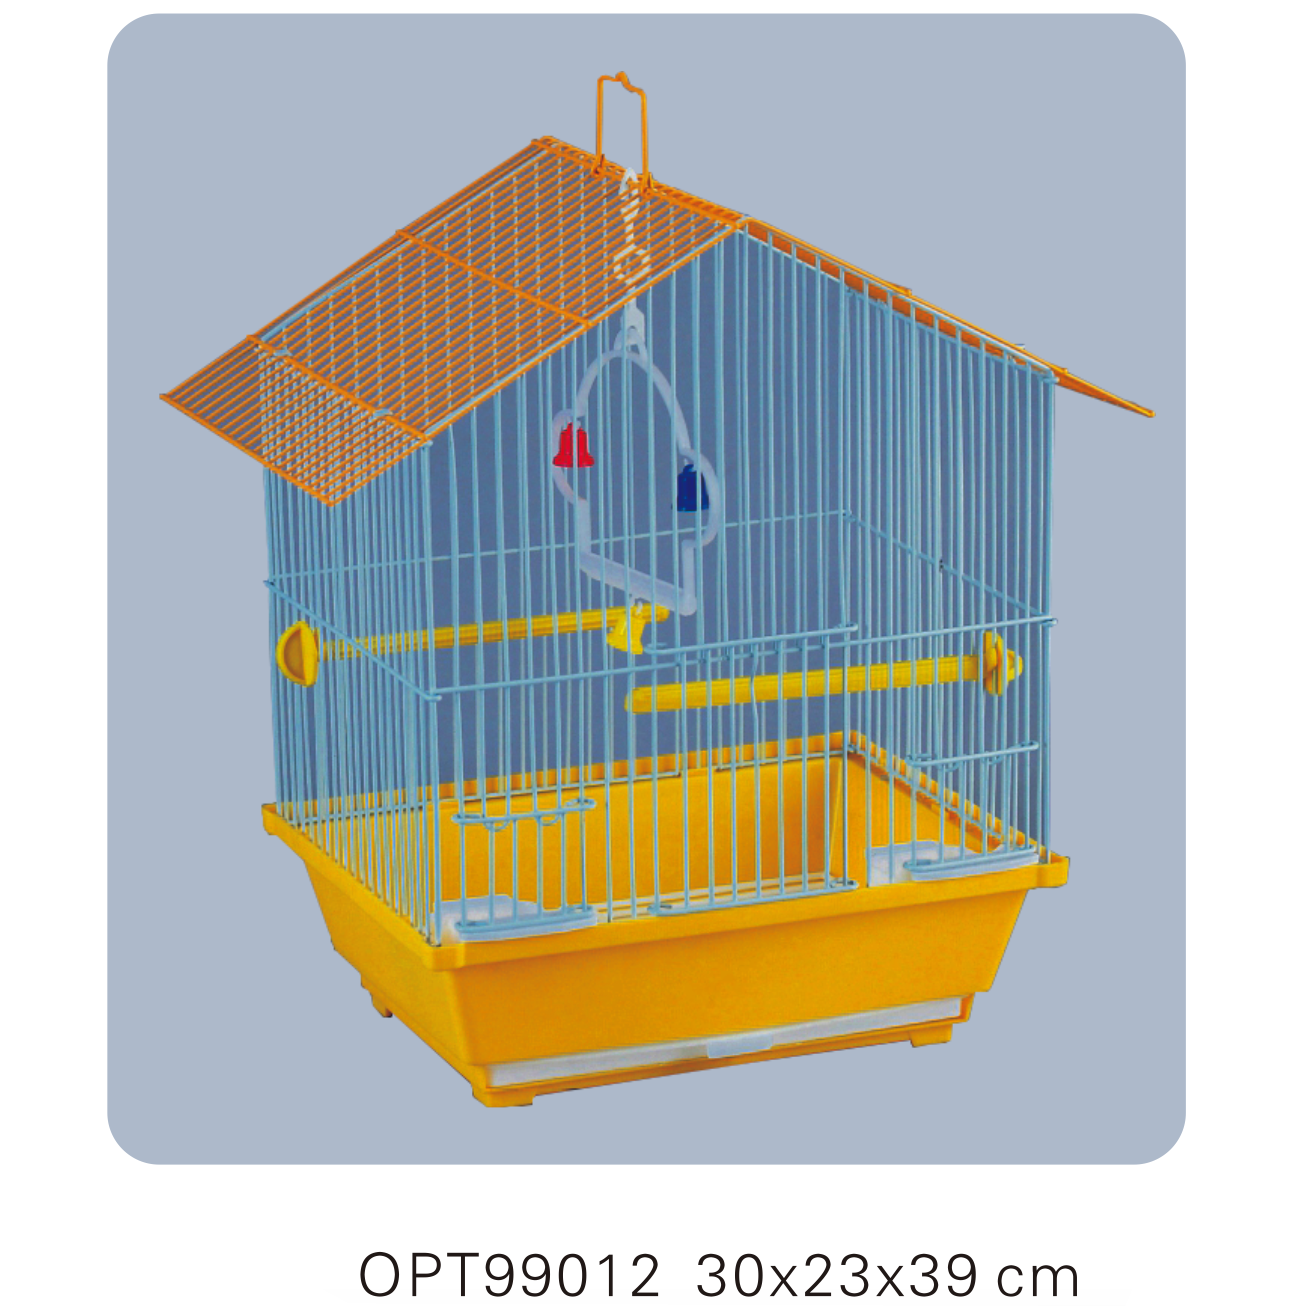 OPT99012 30x23x39cm Bird cages